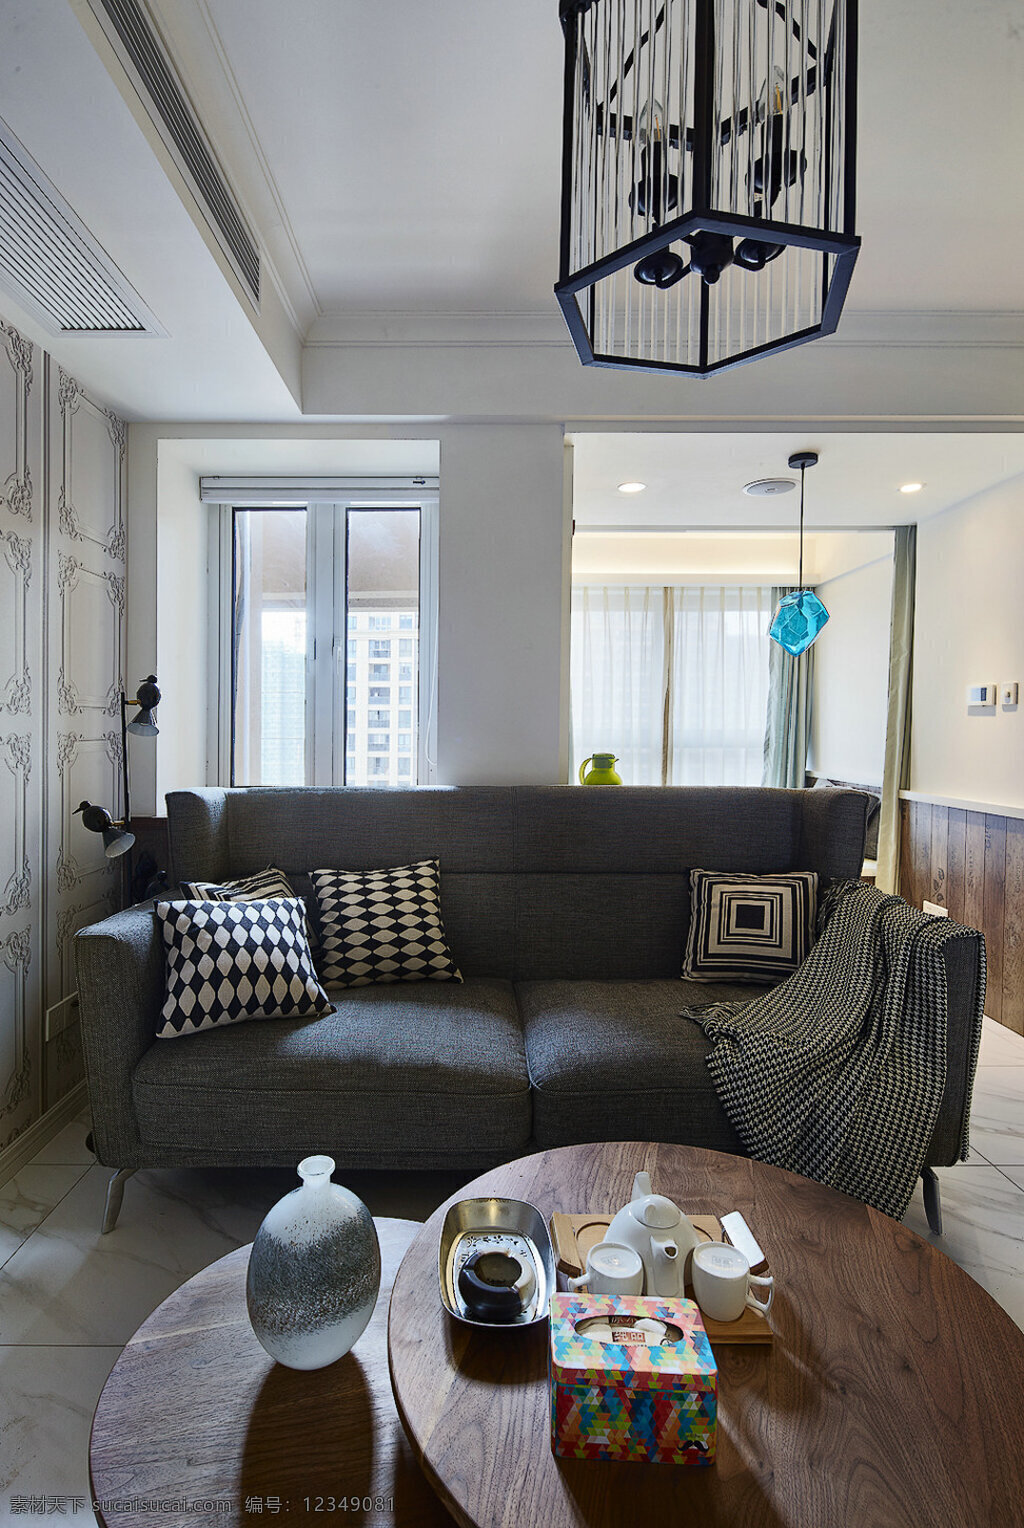 现代 时尚 客厅 深灰色 布艺沙发 室内装修 效果图 瓷砖地板 客厅装修 深灰色沙发 圆形茶几